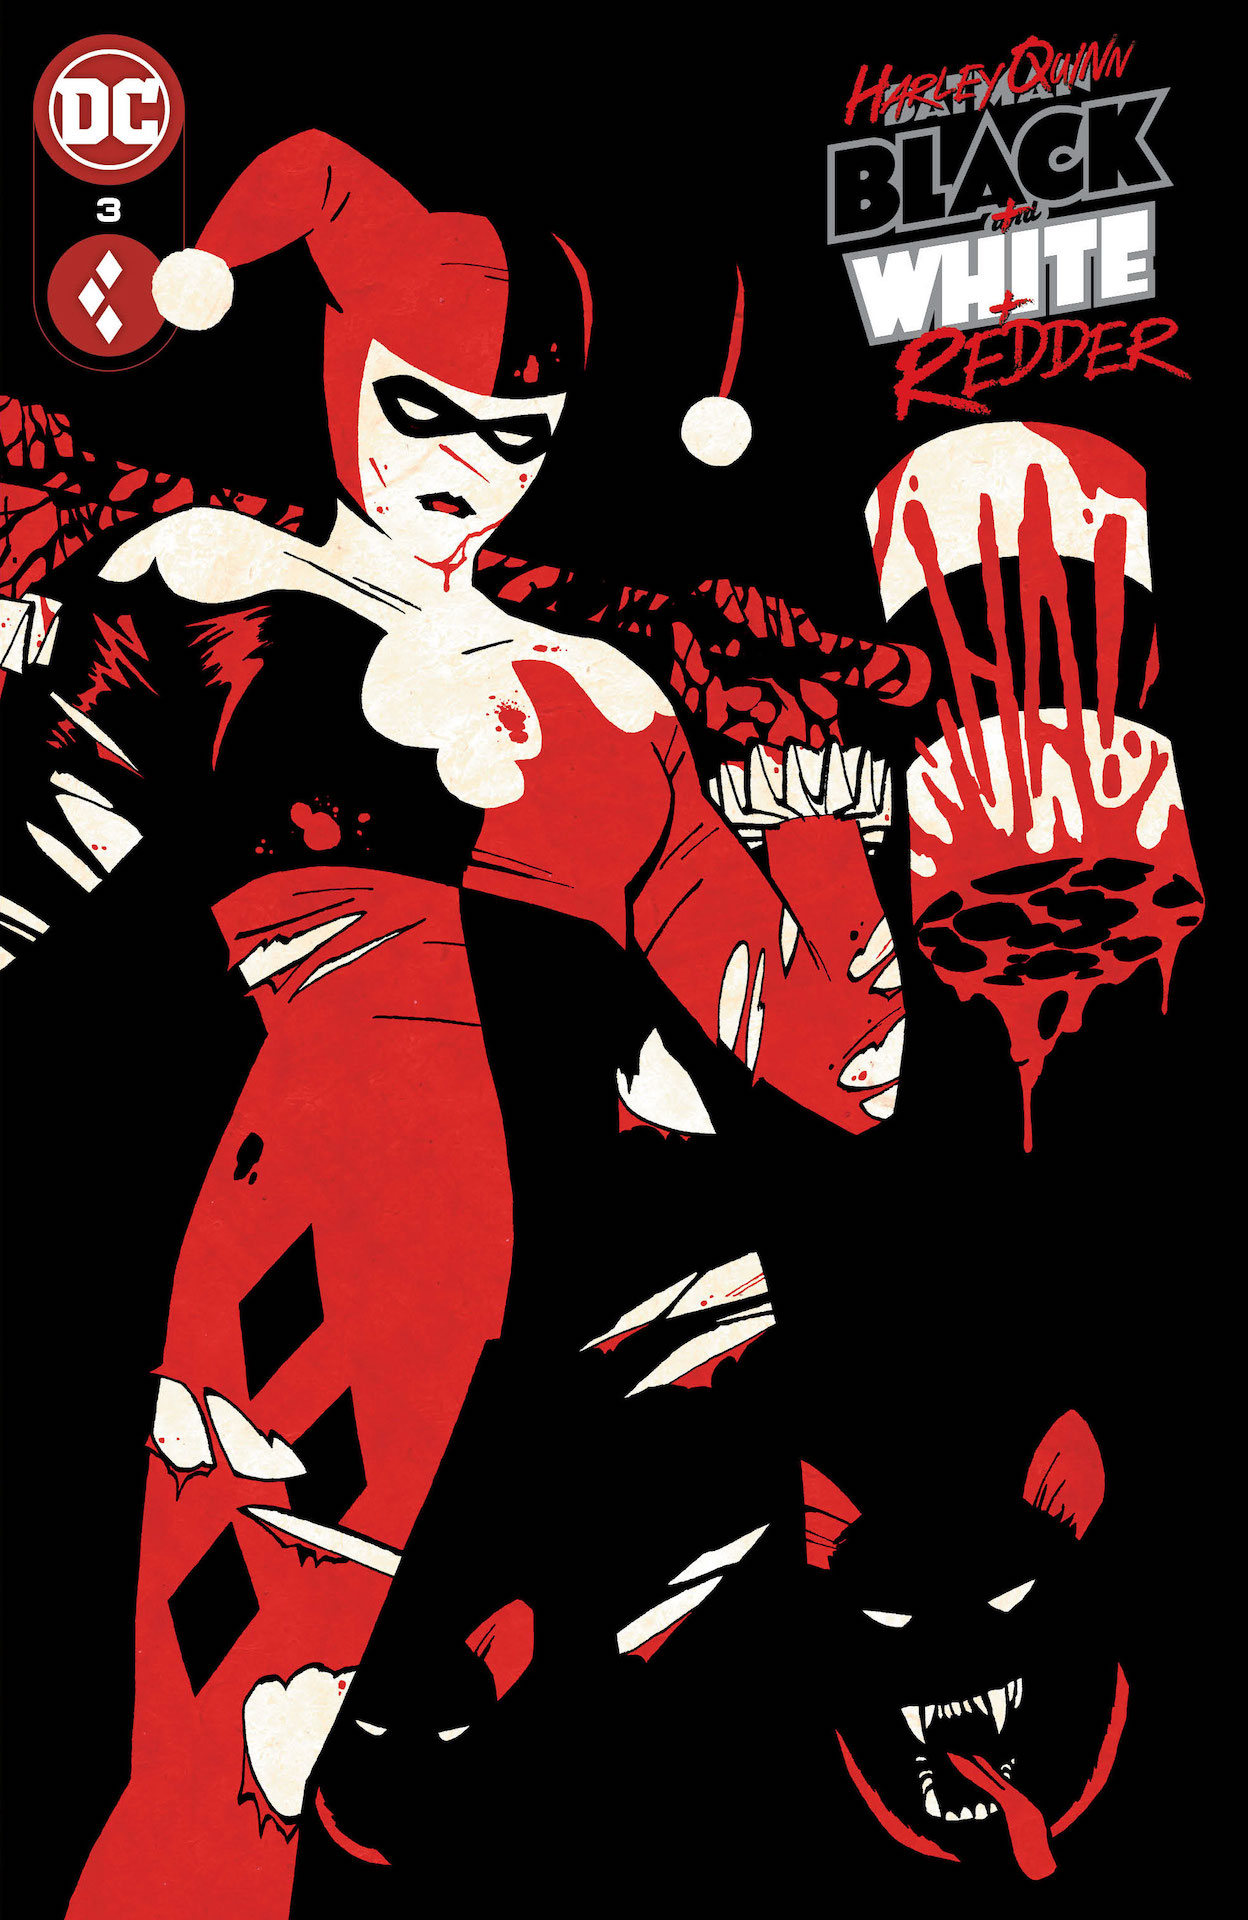 DC Preview: Harley Quinn: Black + White + Redder #3